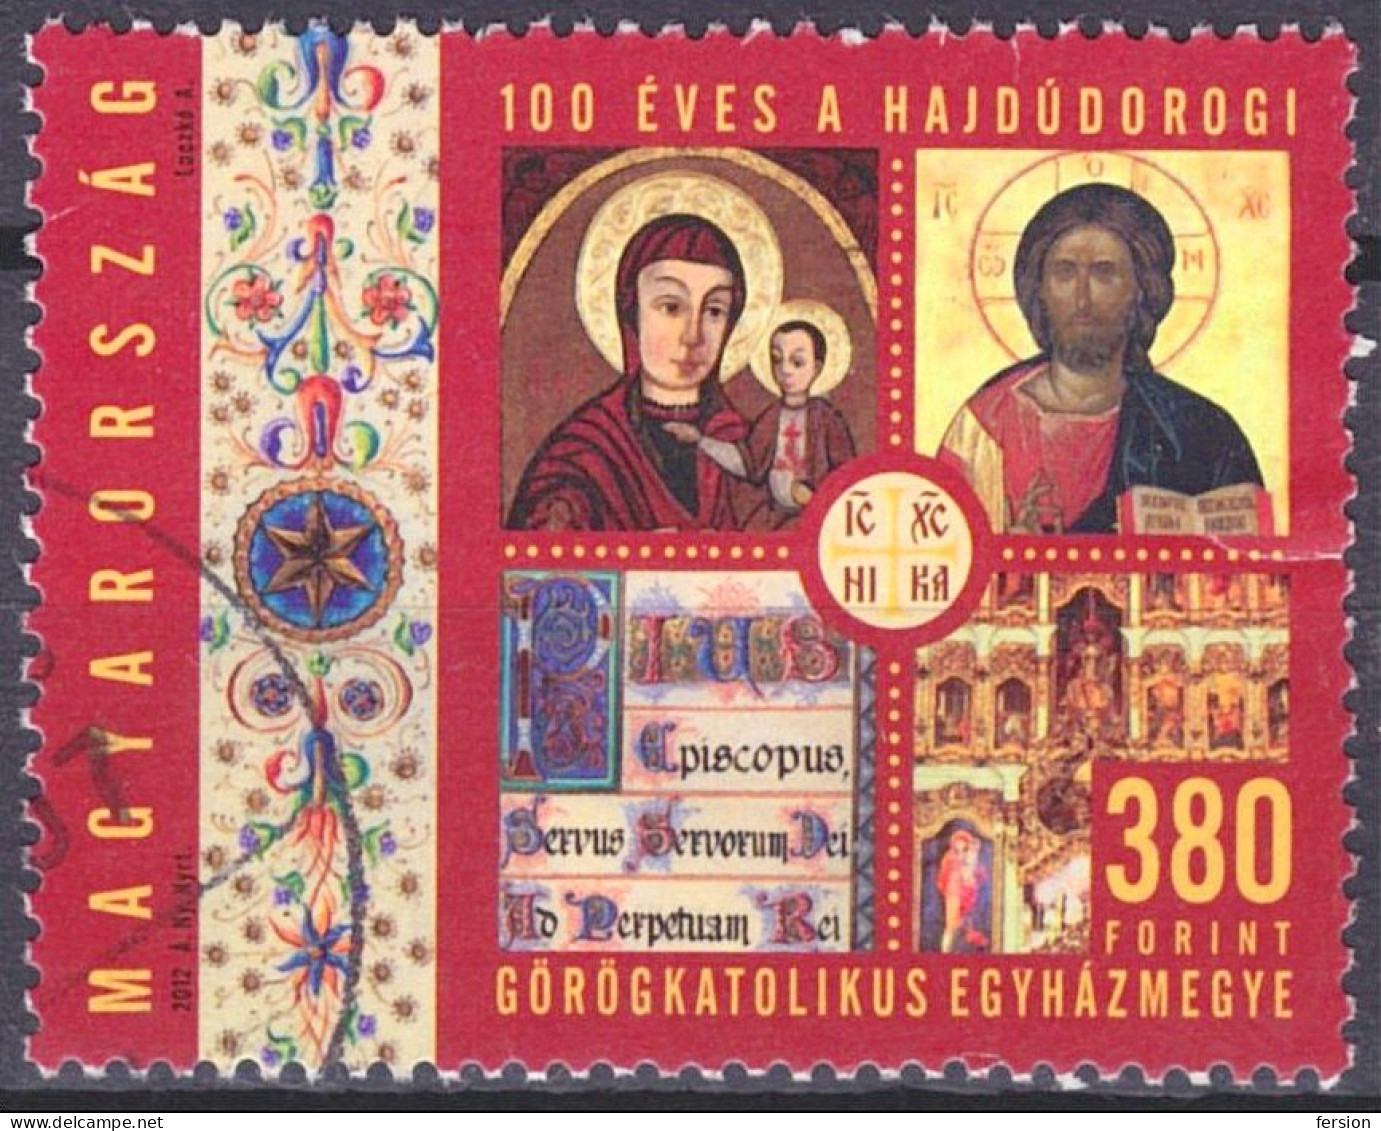 Orthodox Greek Catholic CHURCH Diocese In Hungary Hajdudorog / Icon Icons - Jesus - USED - Hungary 2012 - Religieux